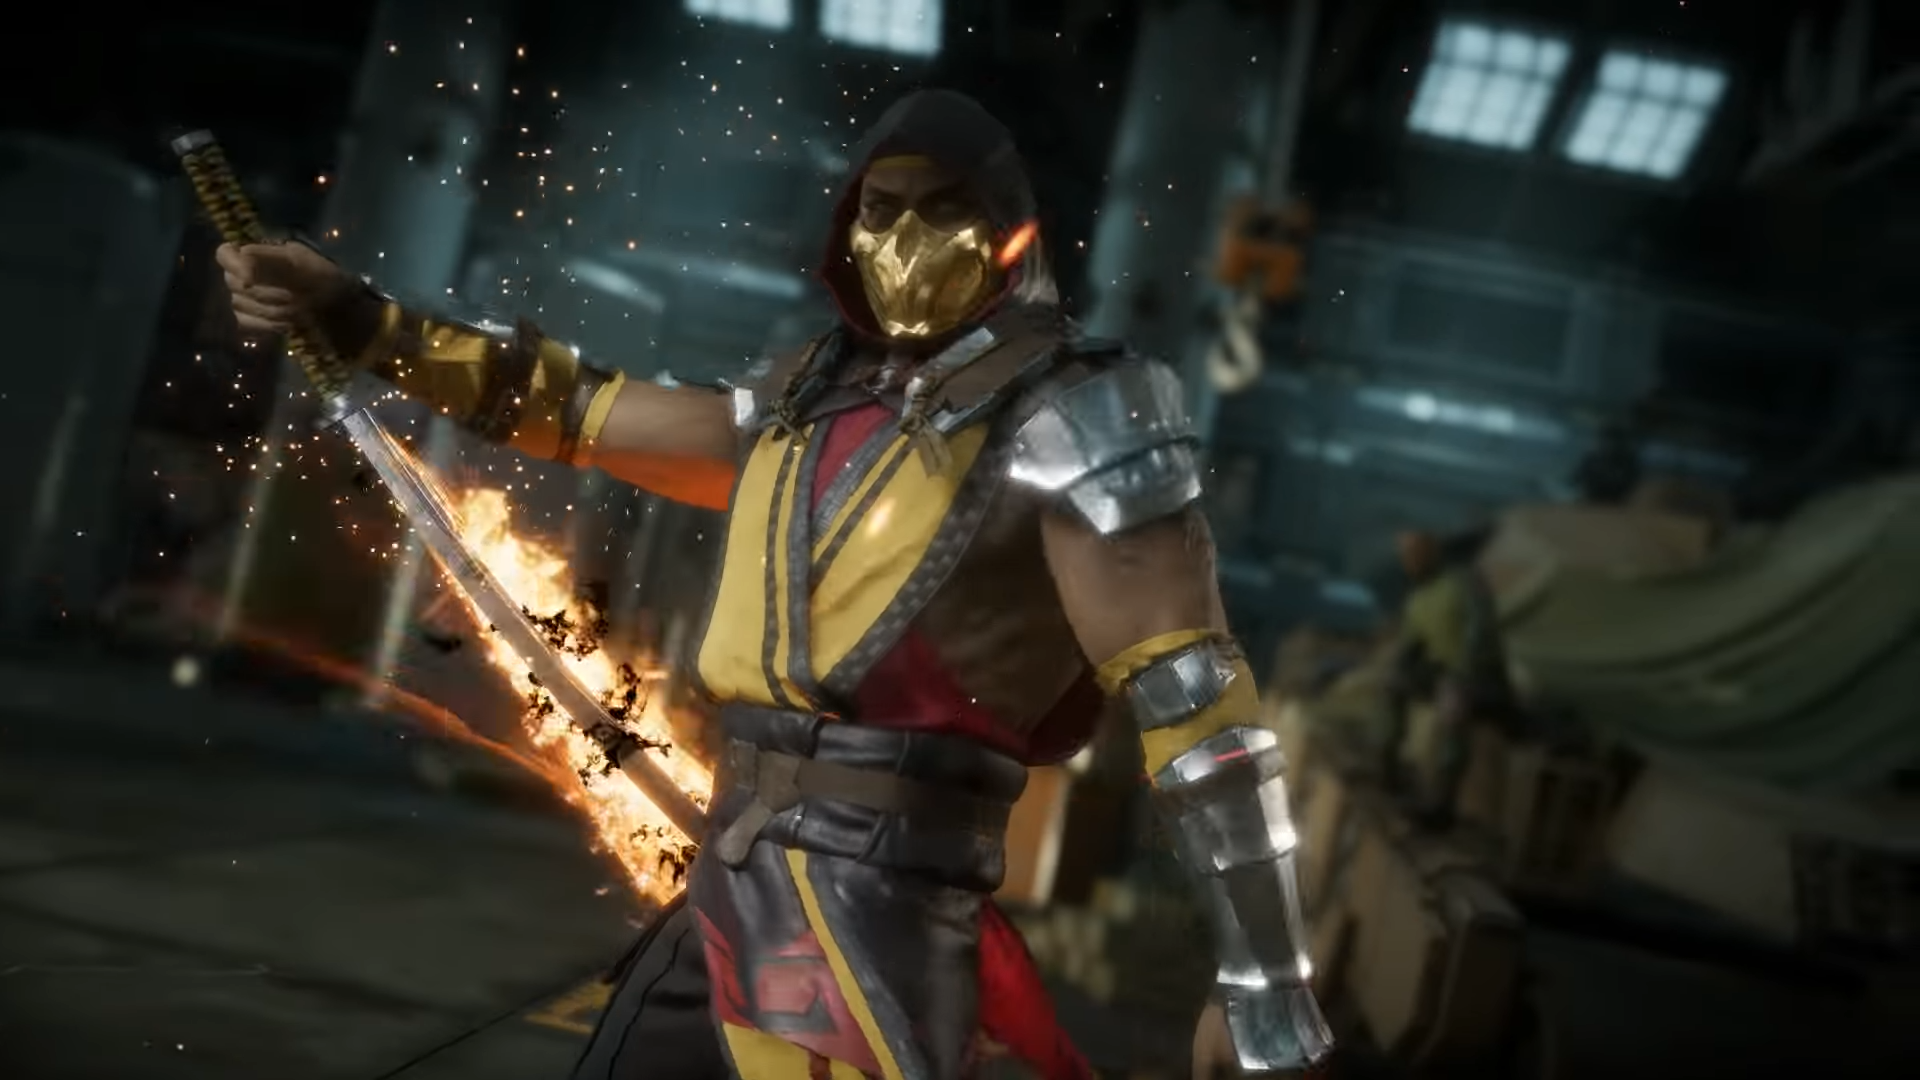 Baraka returns for Mortal Kombat 11 character roster